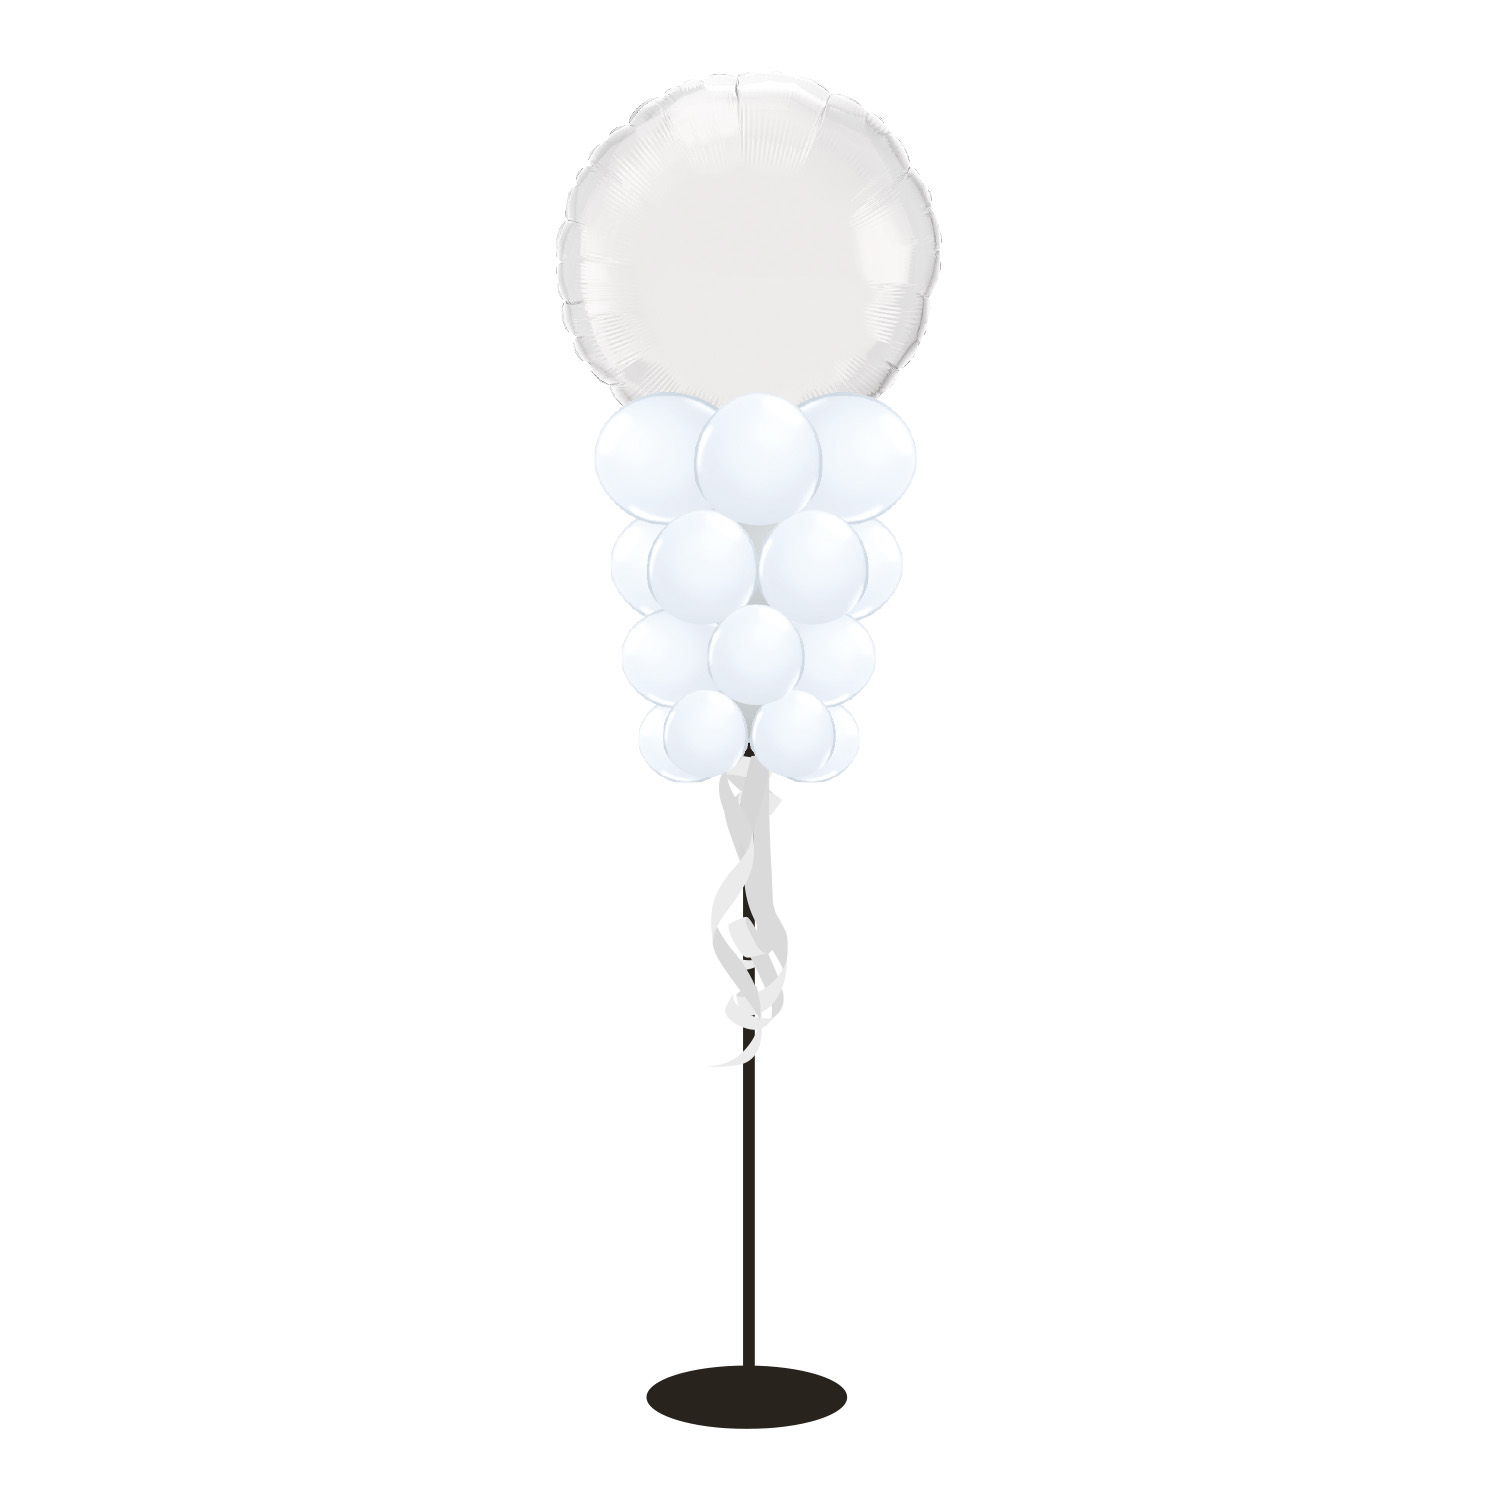 Ballongstrut Small med rund folieballong